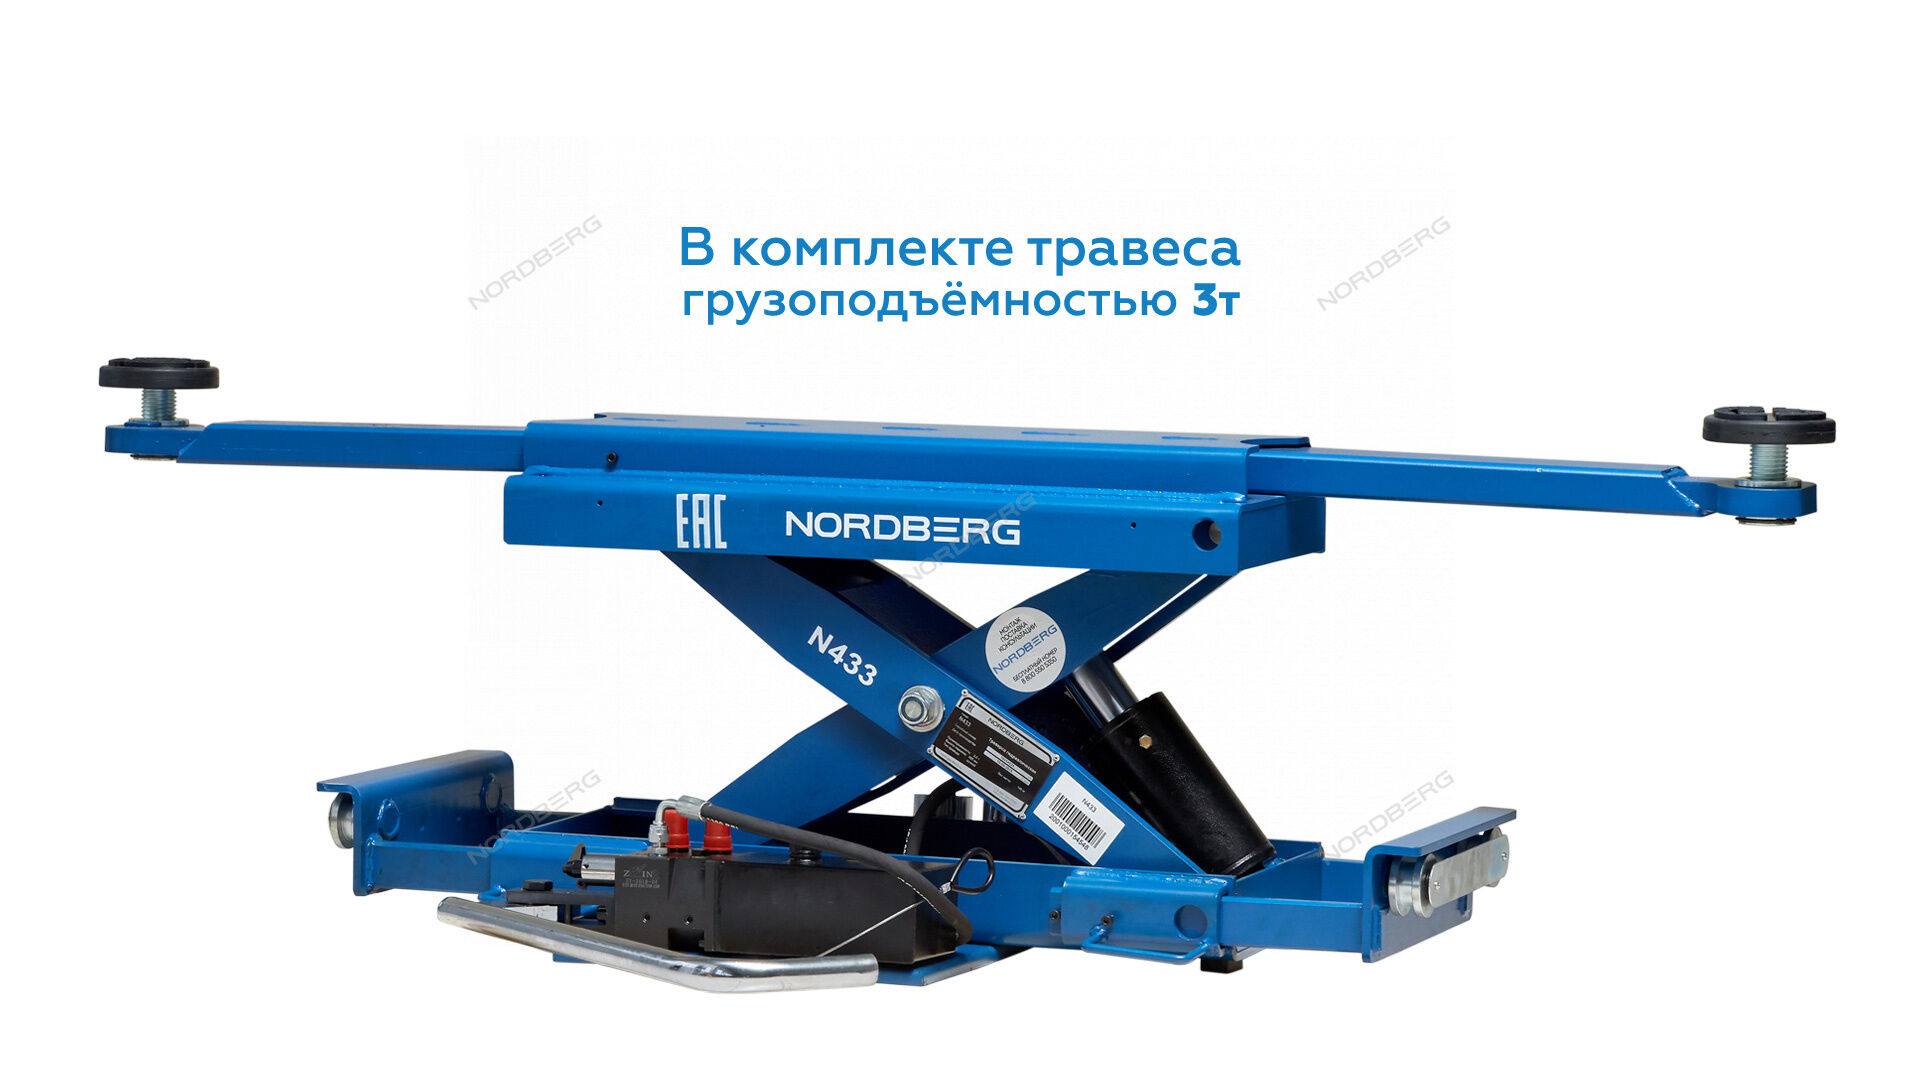 Подъемник четырехстоечный Nordberg 4450JB 5 т, 380 В c ручной траверсой (синий) 3